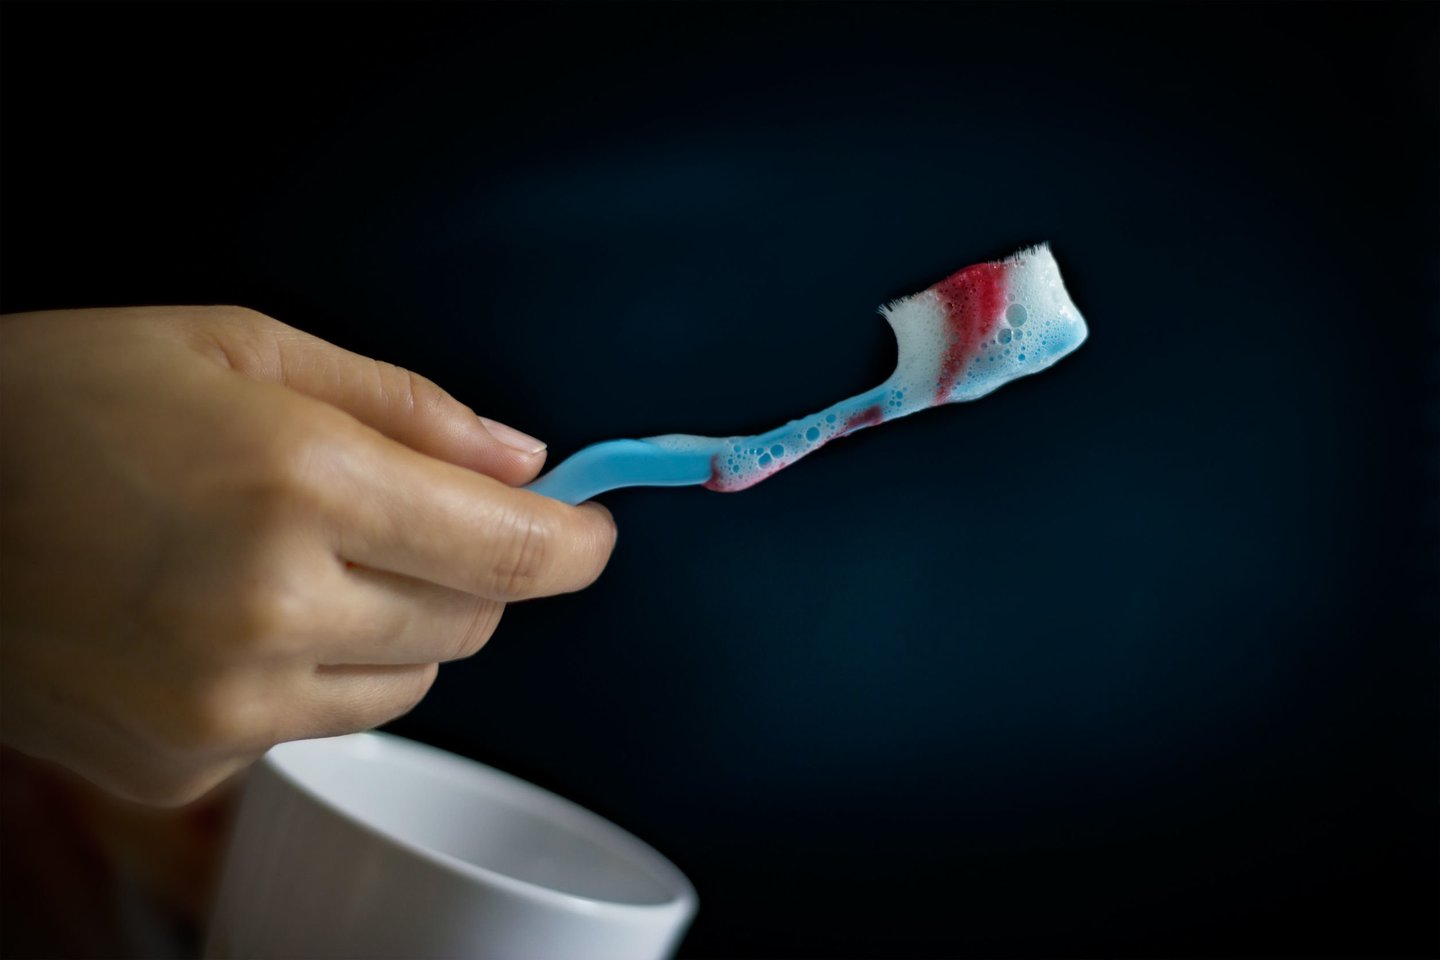 Jei dantenos kraujuoja tik kartais – nieko tokio, gali būti, kad valantis dantis tiesiog mechaniškai pažeidžiate dantenas, tačiau jeigu kraujas pasirodo kasdien, reikėtų sunerimti.<br>123rf nuotr.